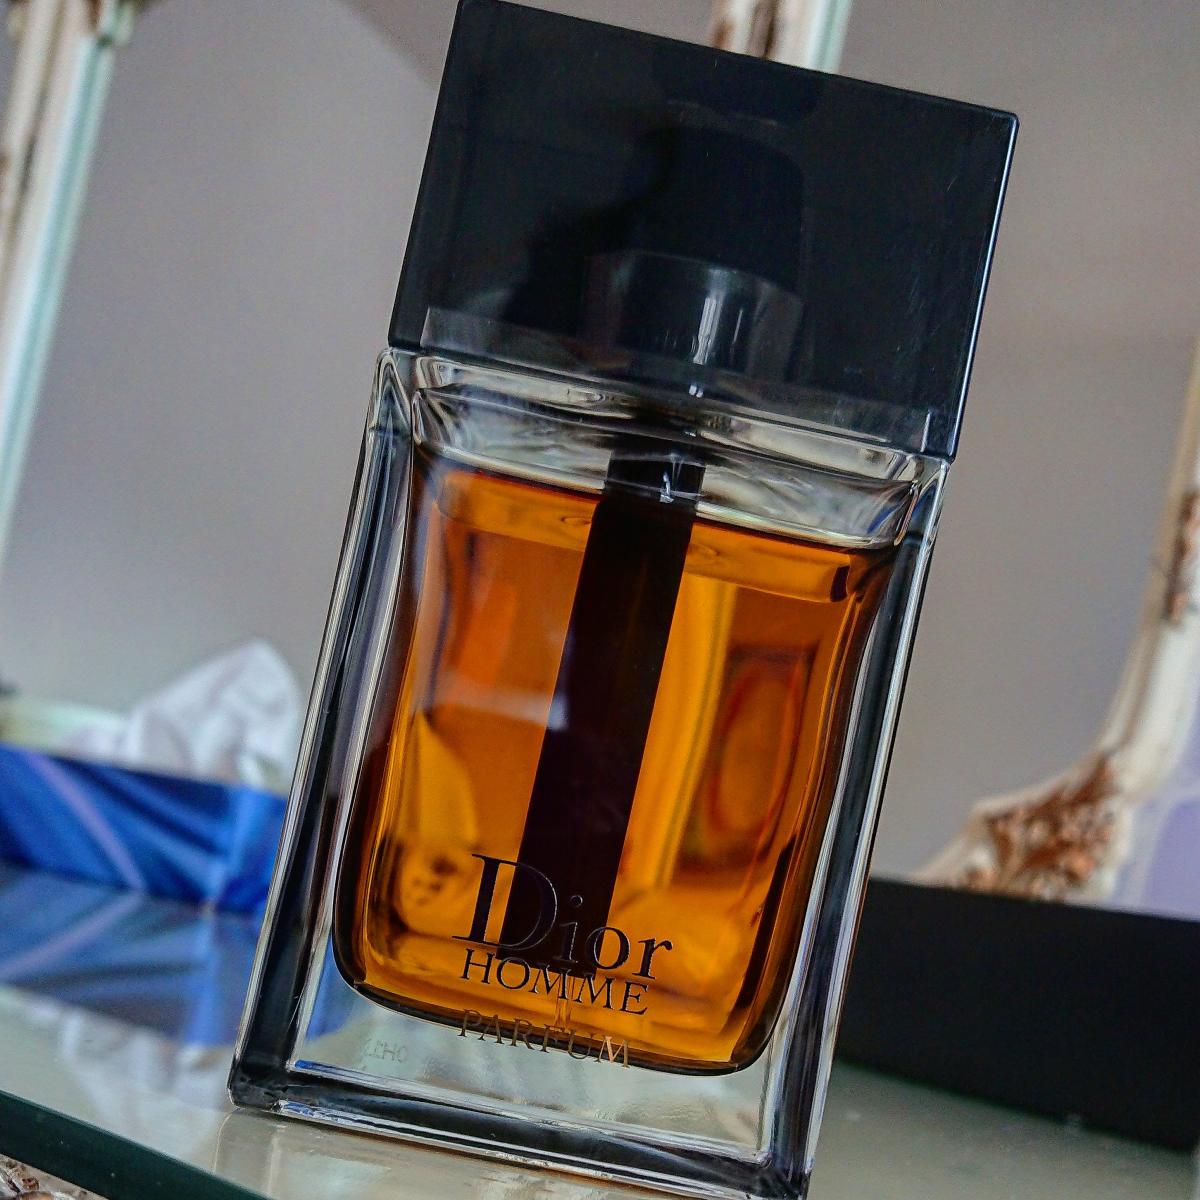 Dior Homme Parfum Christian Dior cologne - a fragrance for men 2014